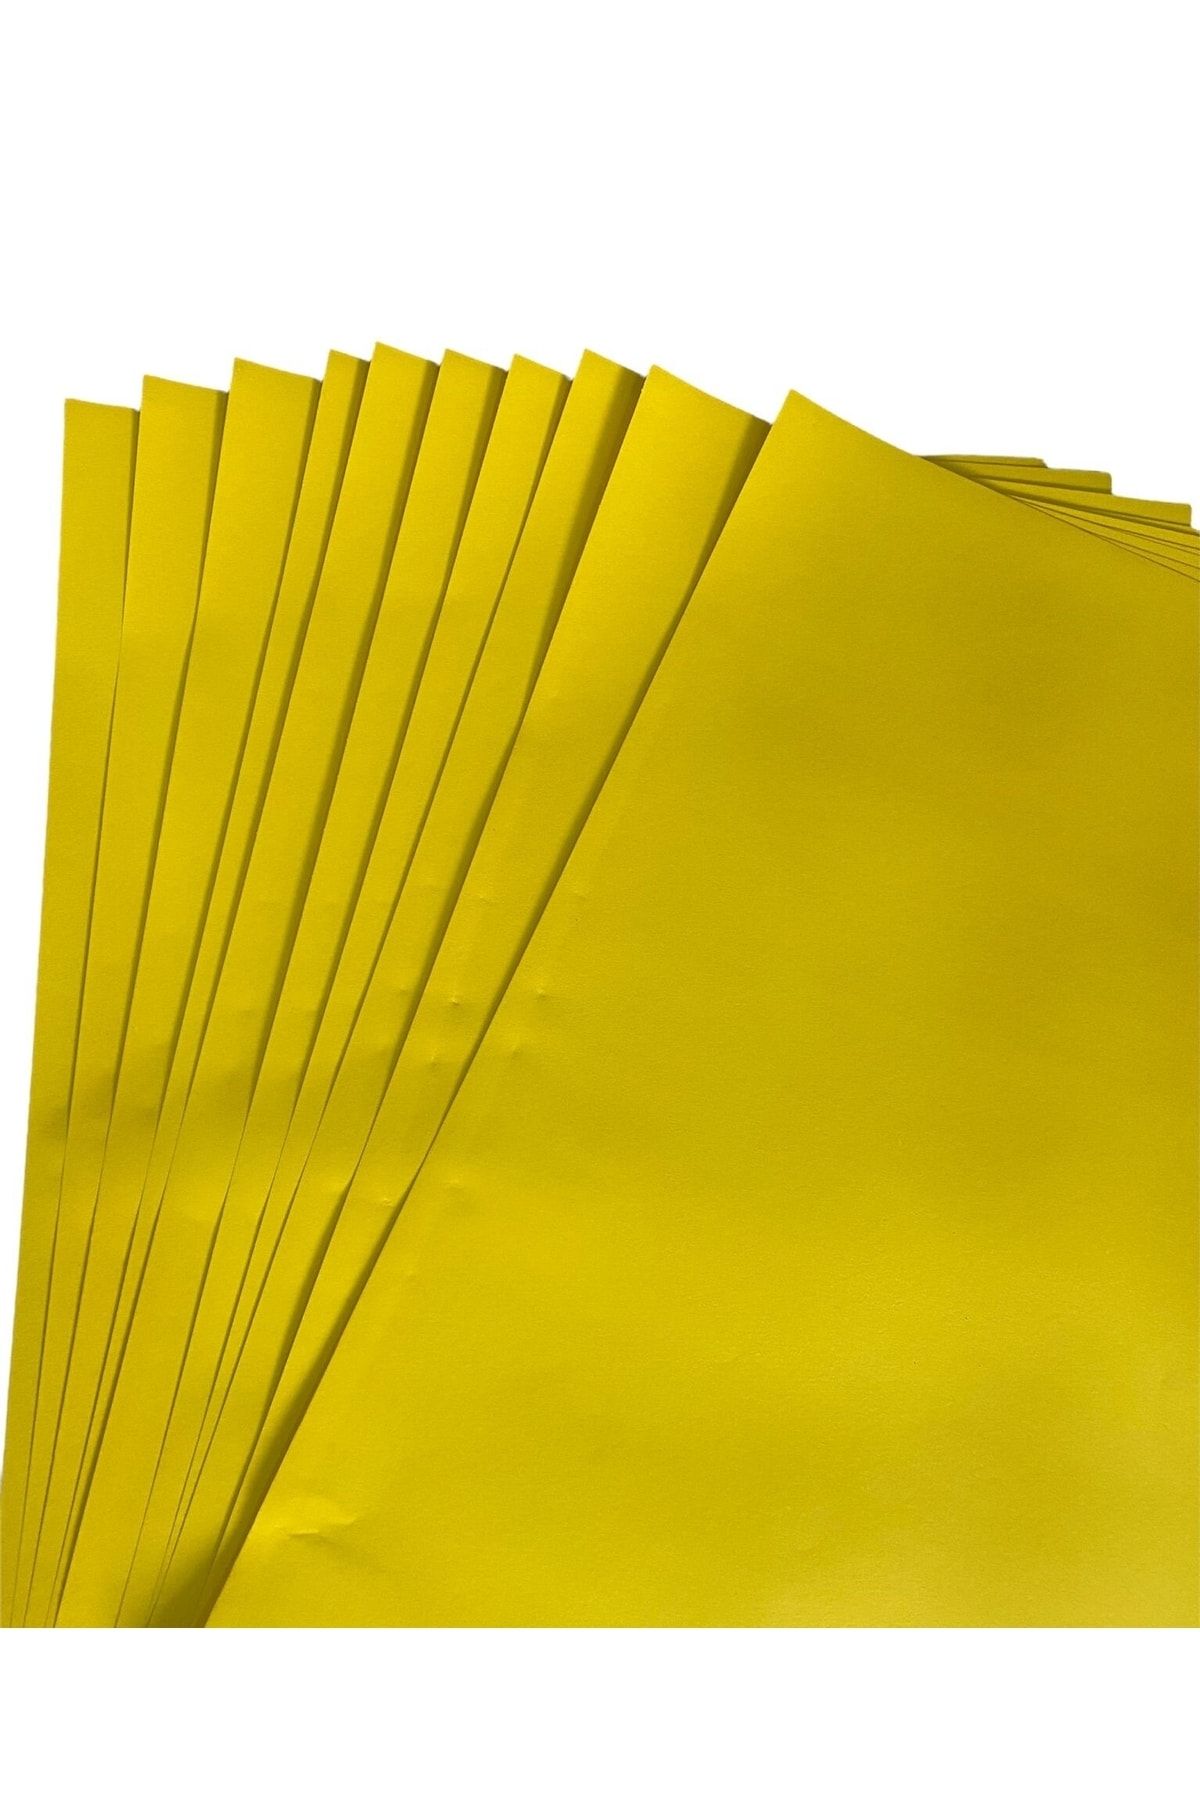 Kika 10 Adet 50x70 Sarı Fon Kartonu